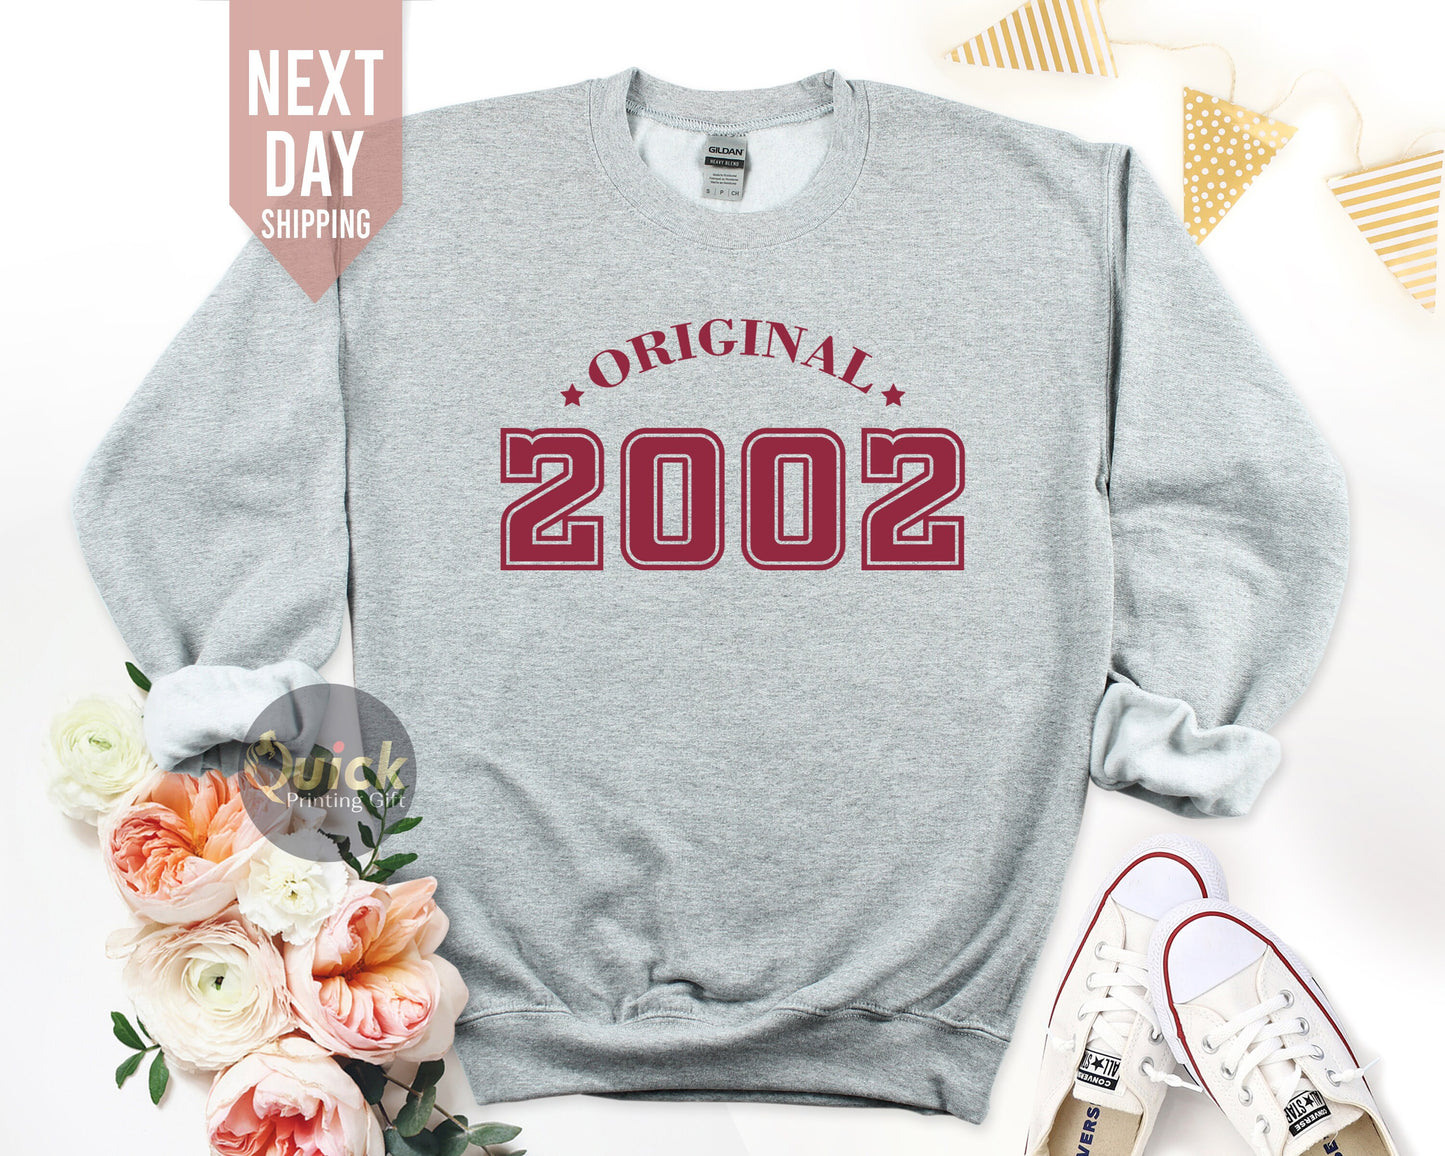 Original 2002 Sweatshirt, 21st Birthday Gift, 2002 Birthday Sweatshirt, Gift for Birthday, Birthday Gift for Men & Women